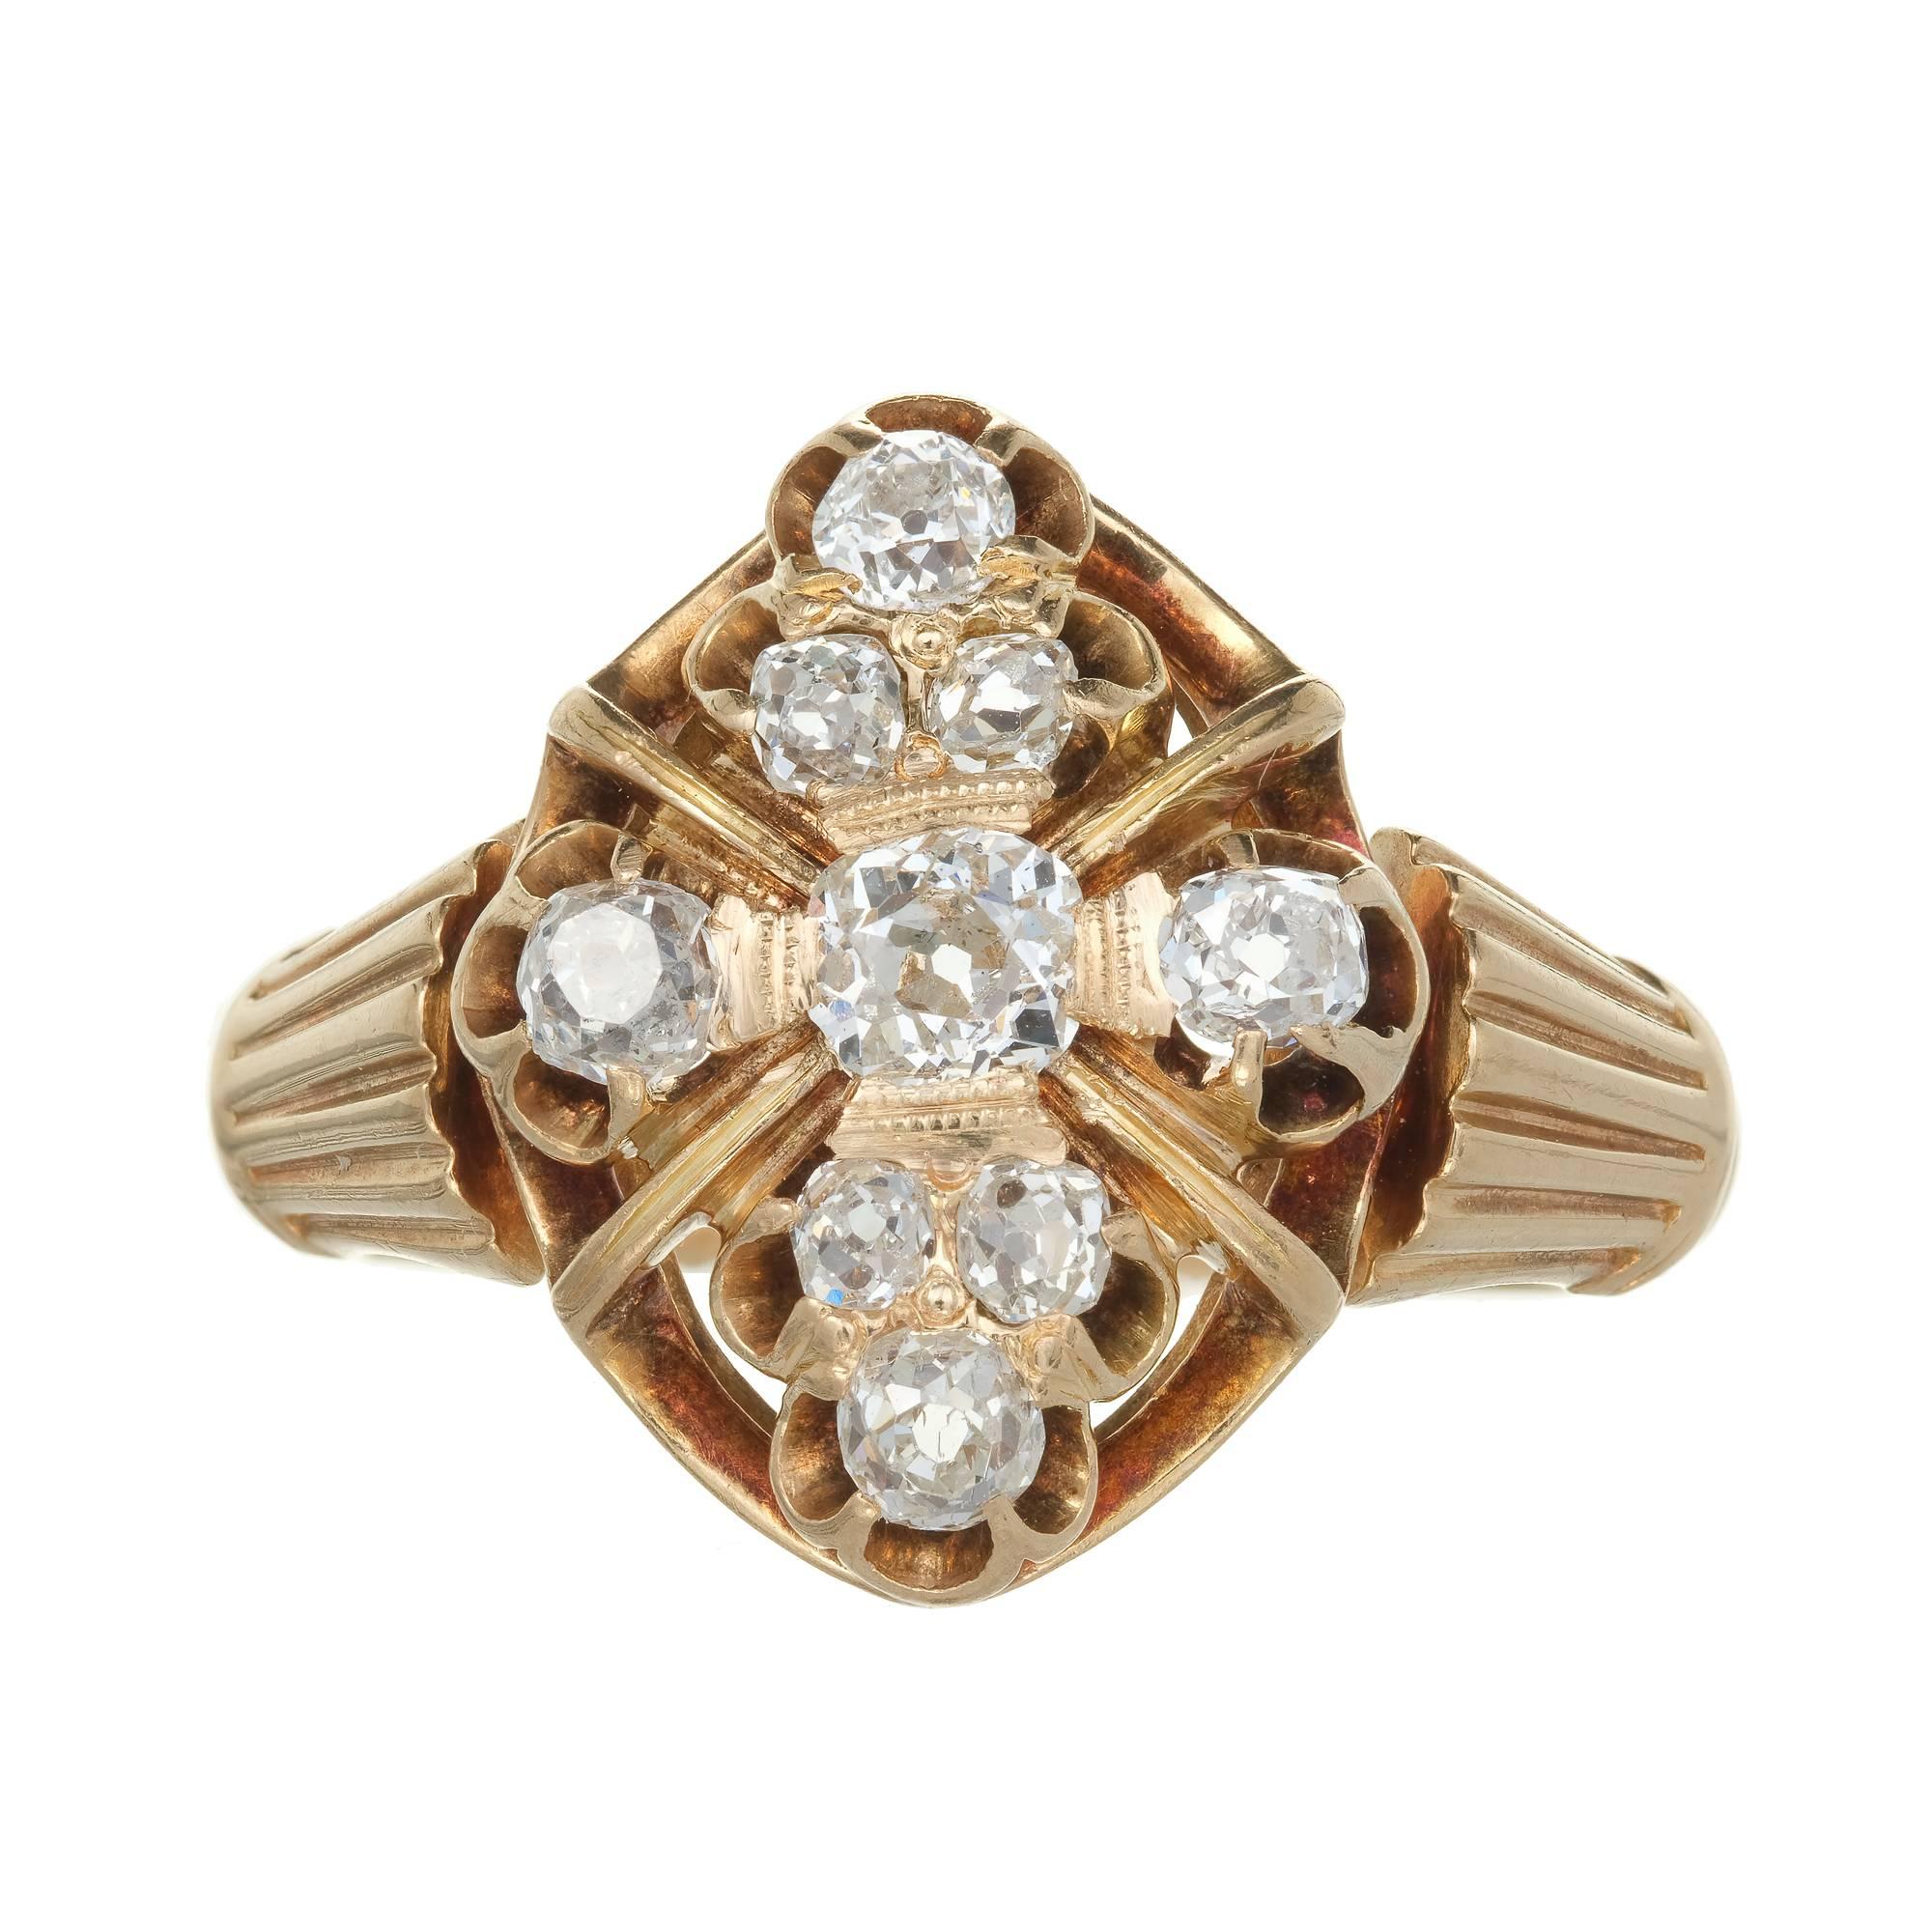  Victorian 1850s Diamond Ring mit schönen hellen funkelnden alten Mine Brillantschliff Diamanten in einem 14k Gelbgold und natürliche Patina Einstellung.

9 Diamanten im Brillantschliff aus alter Mine, Gesamtgewicht ca. 0,75cts, I, VS - SI
Größe 6.5